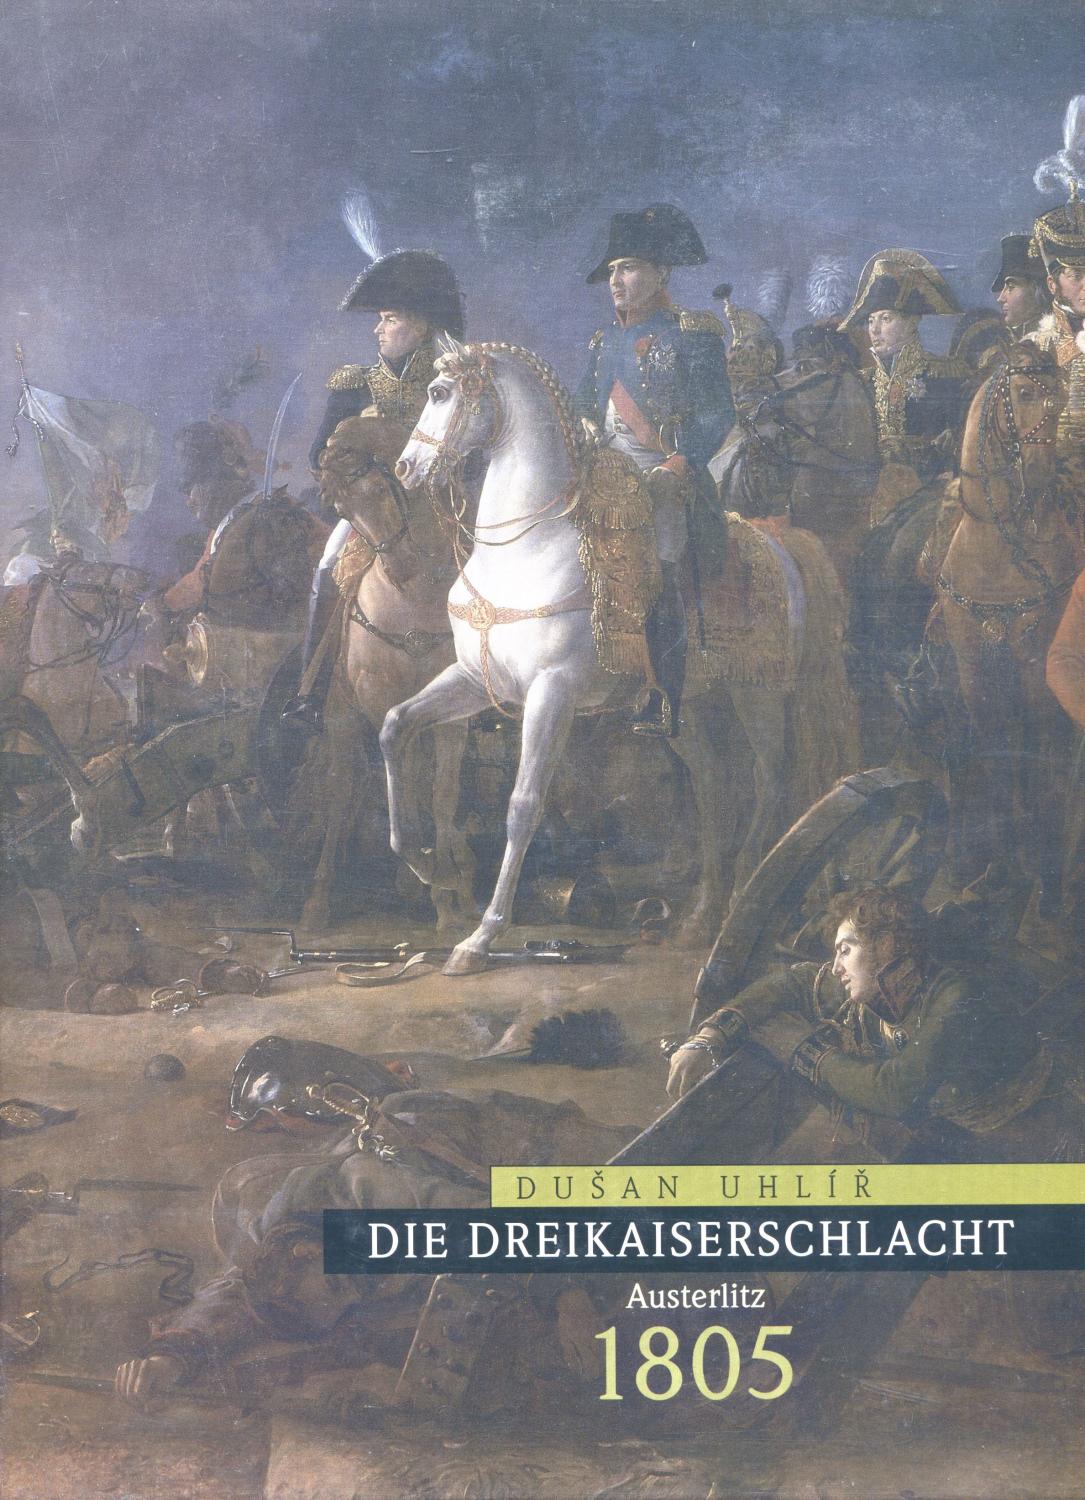 Die Dreikaiserschlacht - Austerlitz 1805